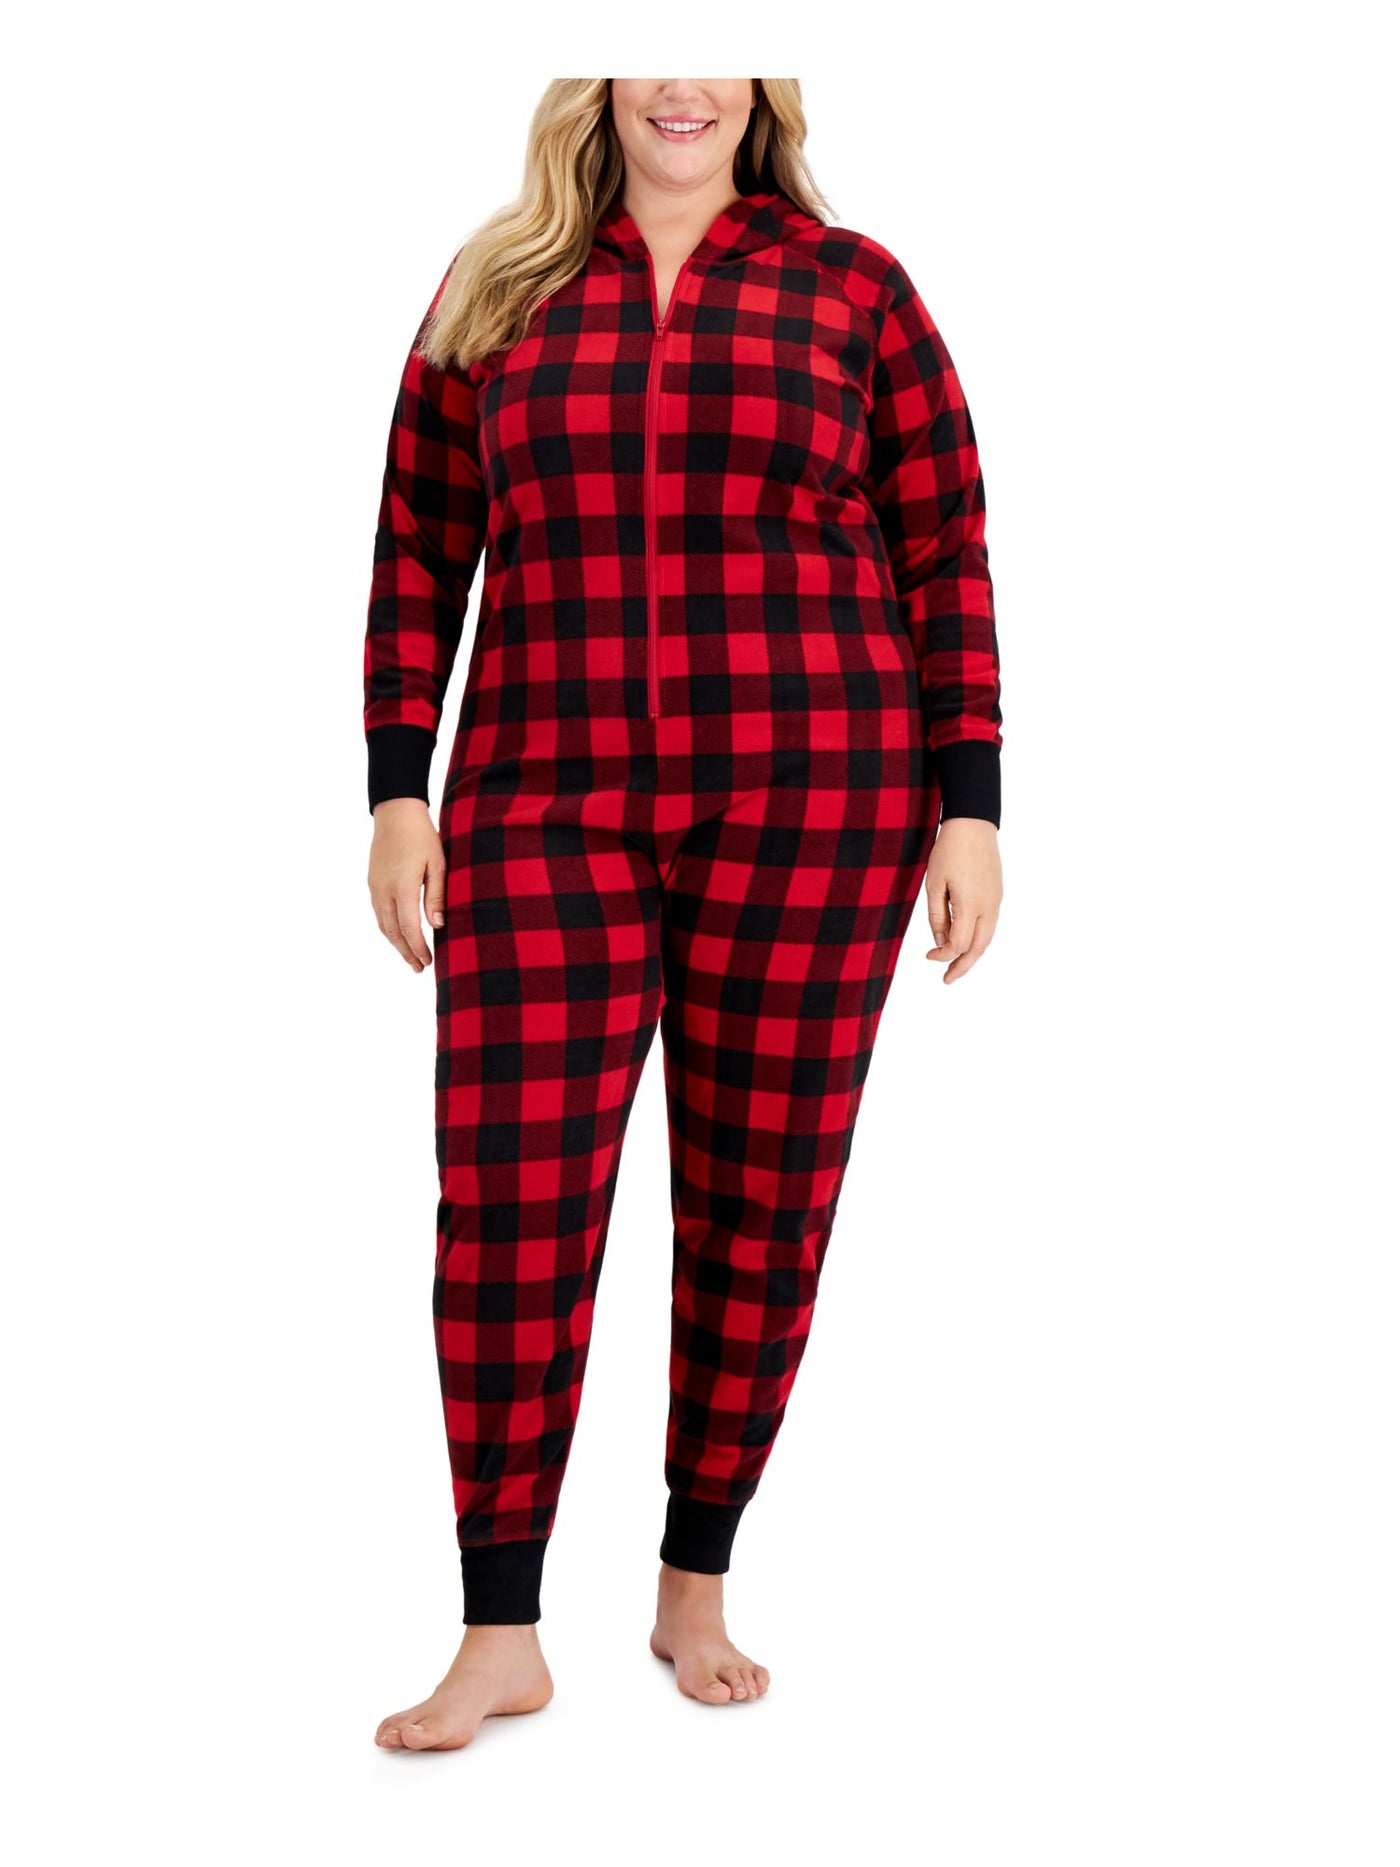 FAMILY PJs Intimates Red 1 Piece Cuffed Fleece Pajamas Plus 3X